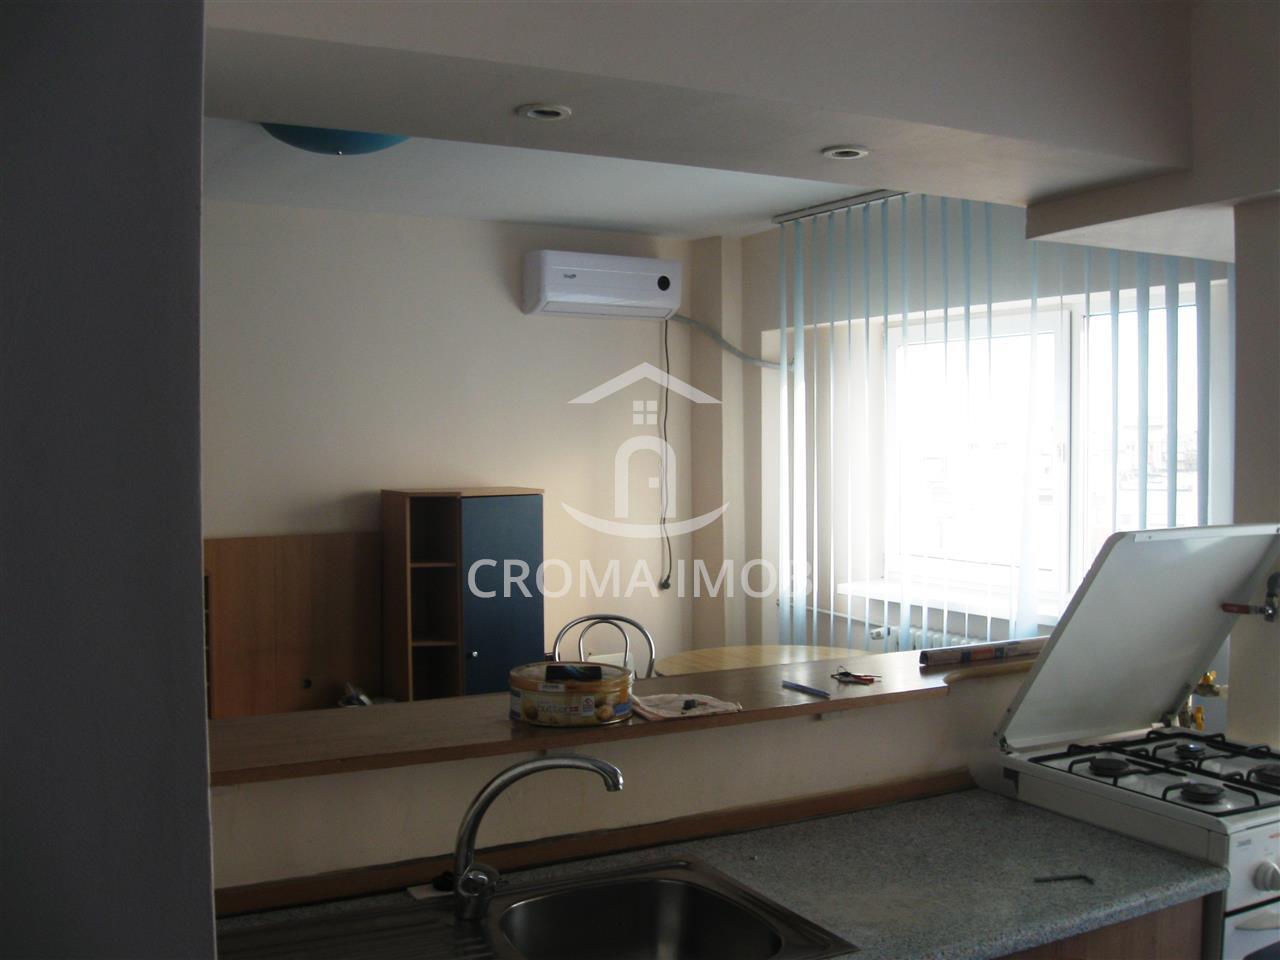 Croma Imob - Vanzare apartament 3 camere in Ploiesti, zona Caraiman